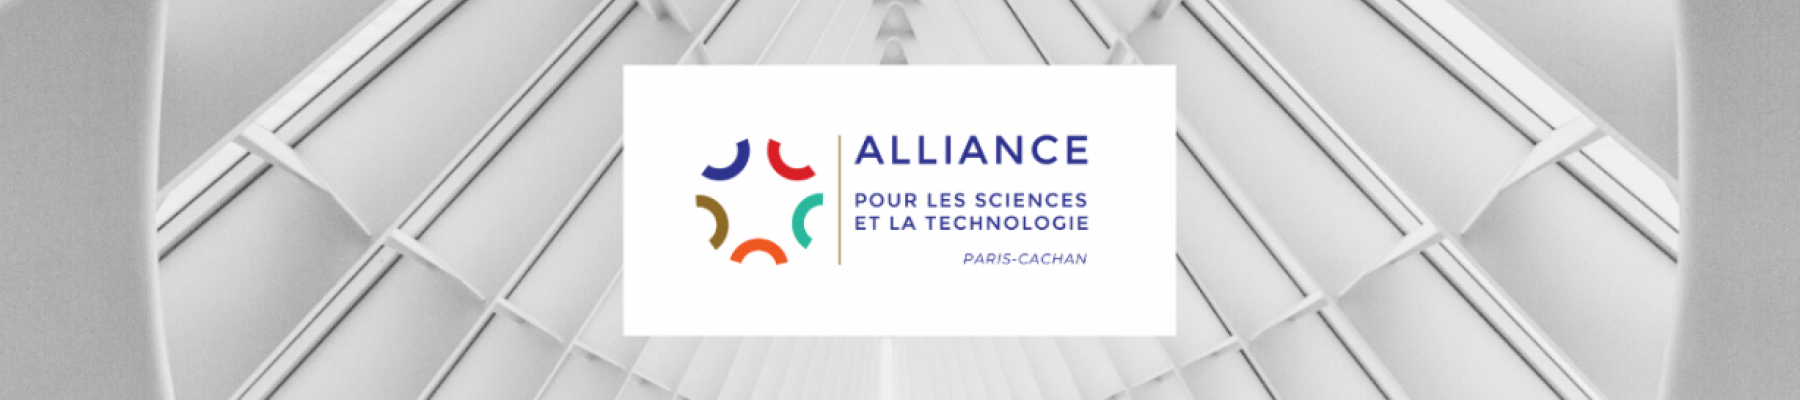 Alliance pour les Sciences & la Technologie Paris-Cachan